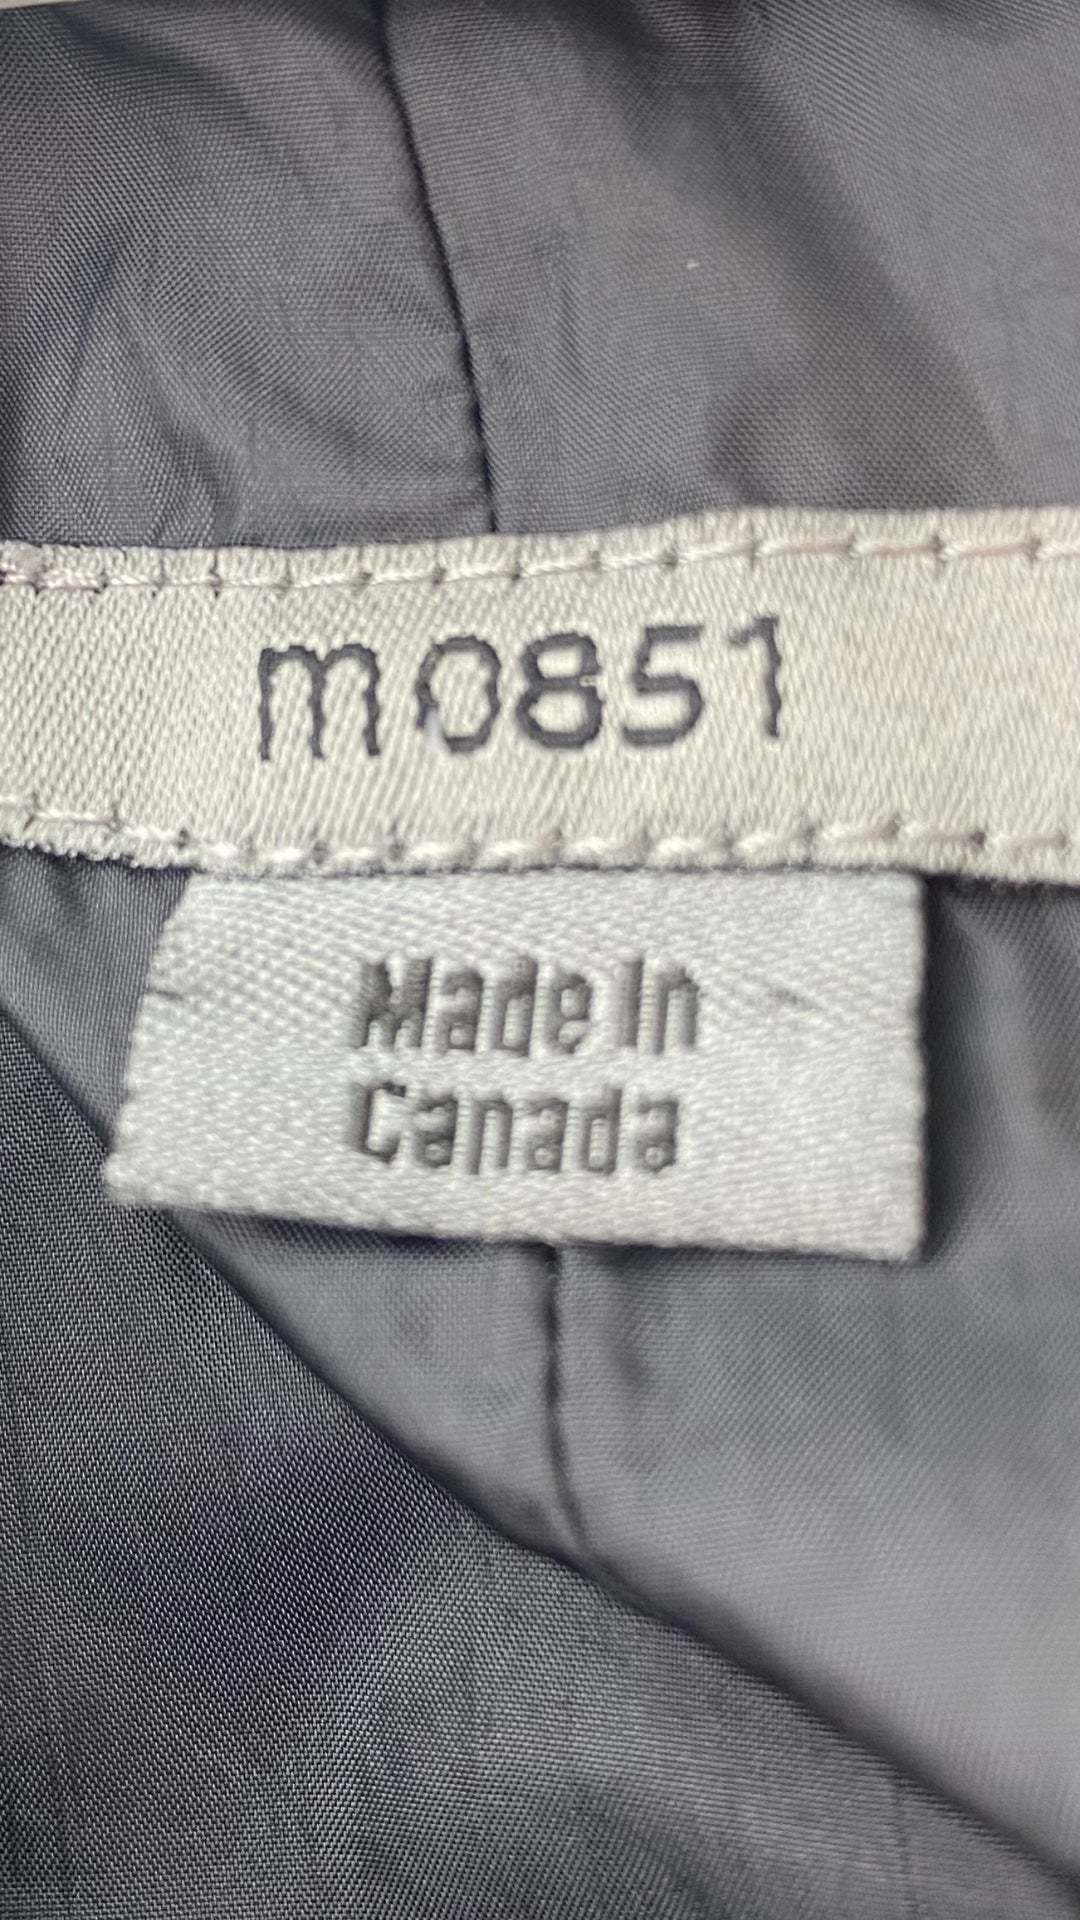 Manteau noir imperméable style trench M0851, taille 2 (xxs-xs-s). Vue de l'étiquette de marque.